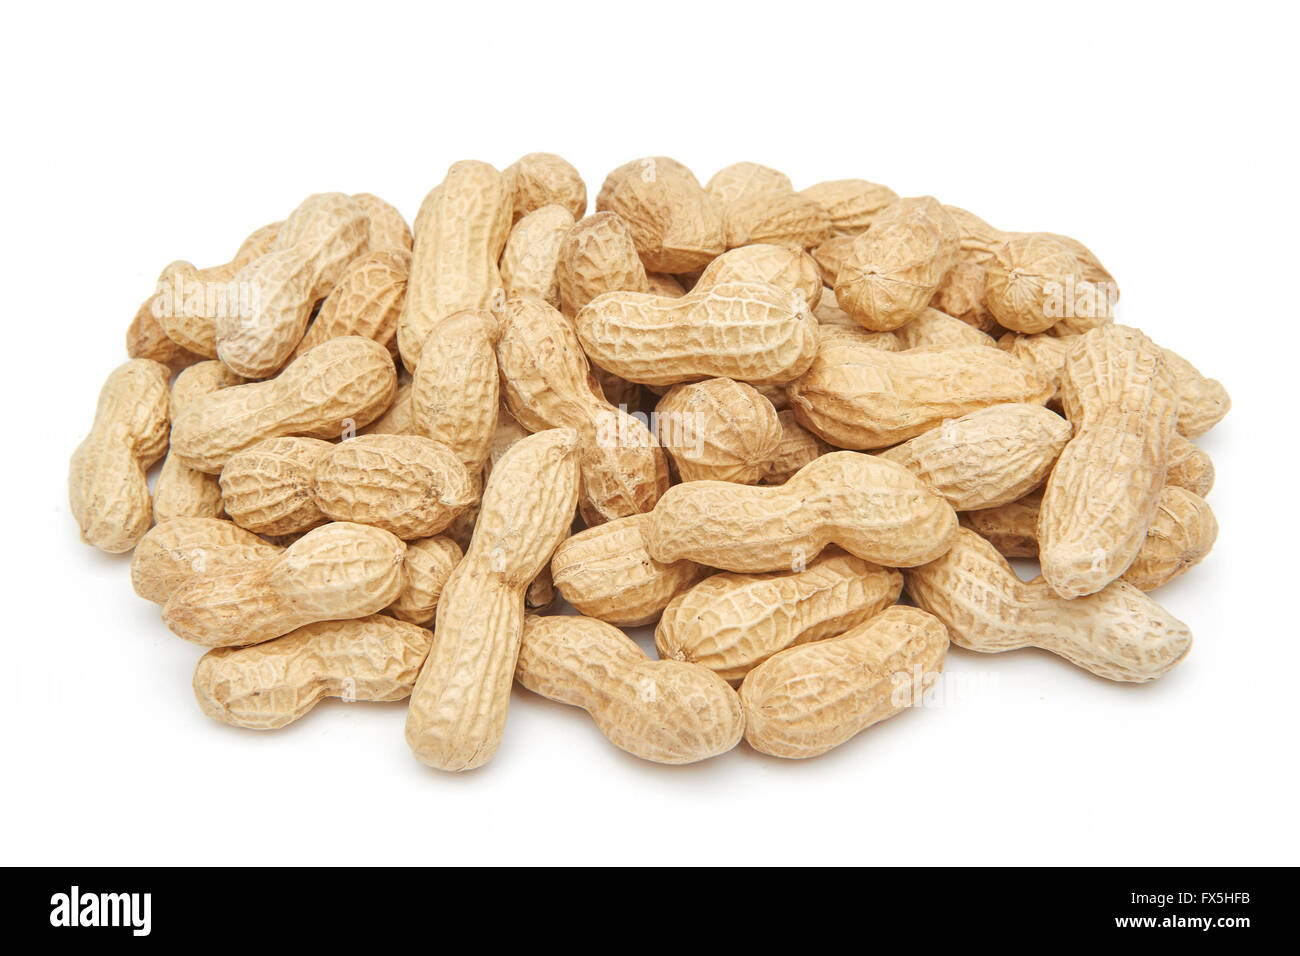 Nahaufnahme Bild von geschälten Erdnüssen auf weißem Hintergrund Stockfoto